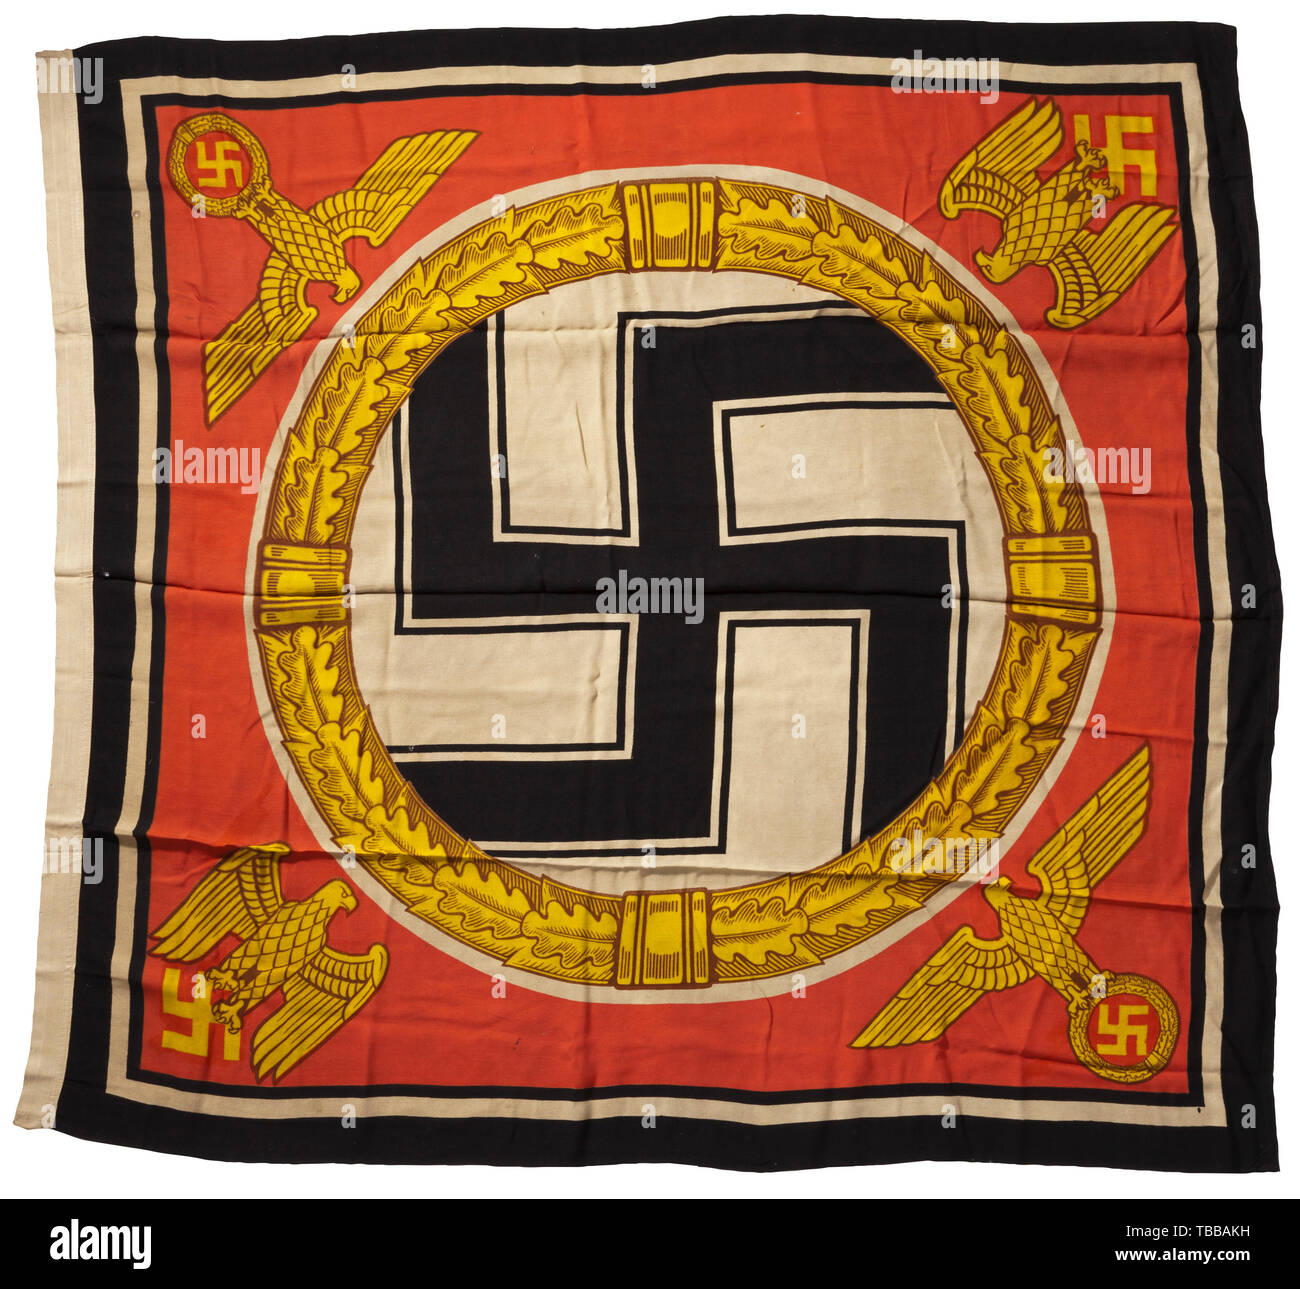 Une norme de Führer et Reichskanzler Adolf Hitler, d'un drapeau avec de couleur d'impression sur les deux côtés, la couture estampillé 'St. d. Führers 1,5 x 1,5" avec l'acceptation de la marine/eagle 'M'. Le centre avec un svastika noir dans une couronne de feuilles de chêne d'or à l'intérieur d'un disque blanc, chacun des quatre coins avec un parti d'or et de la Wehrmacht blanche sur un fond rouge, les bords en noir et blanc. Dans les endroits endommagés, des signes de vieillissement. Dimensions environ 150 x 150 cm., historique historique du 20ème siècle, Editorial-Use-seulement Banque D'Images